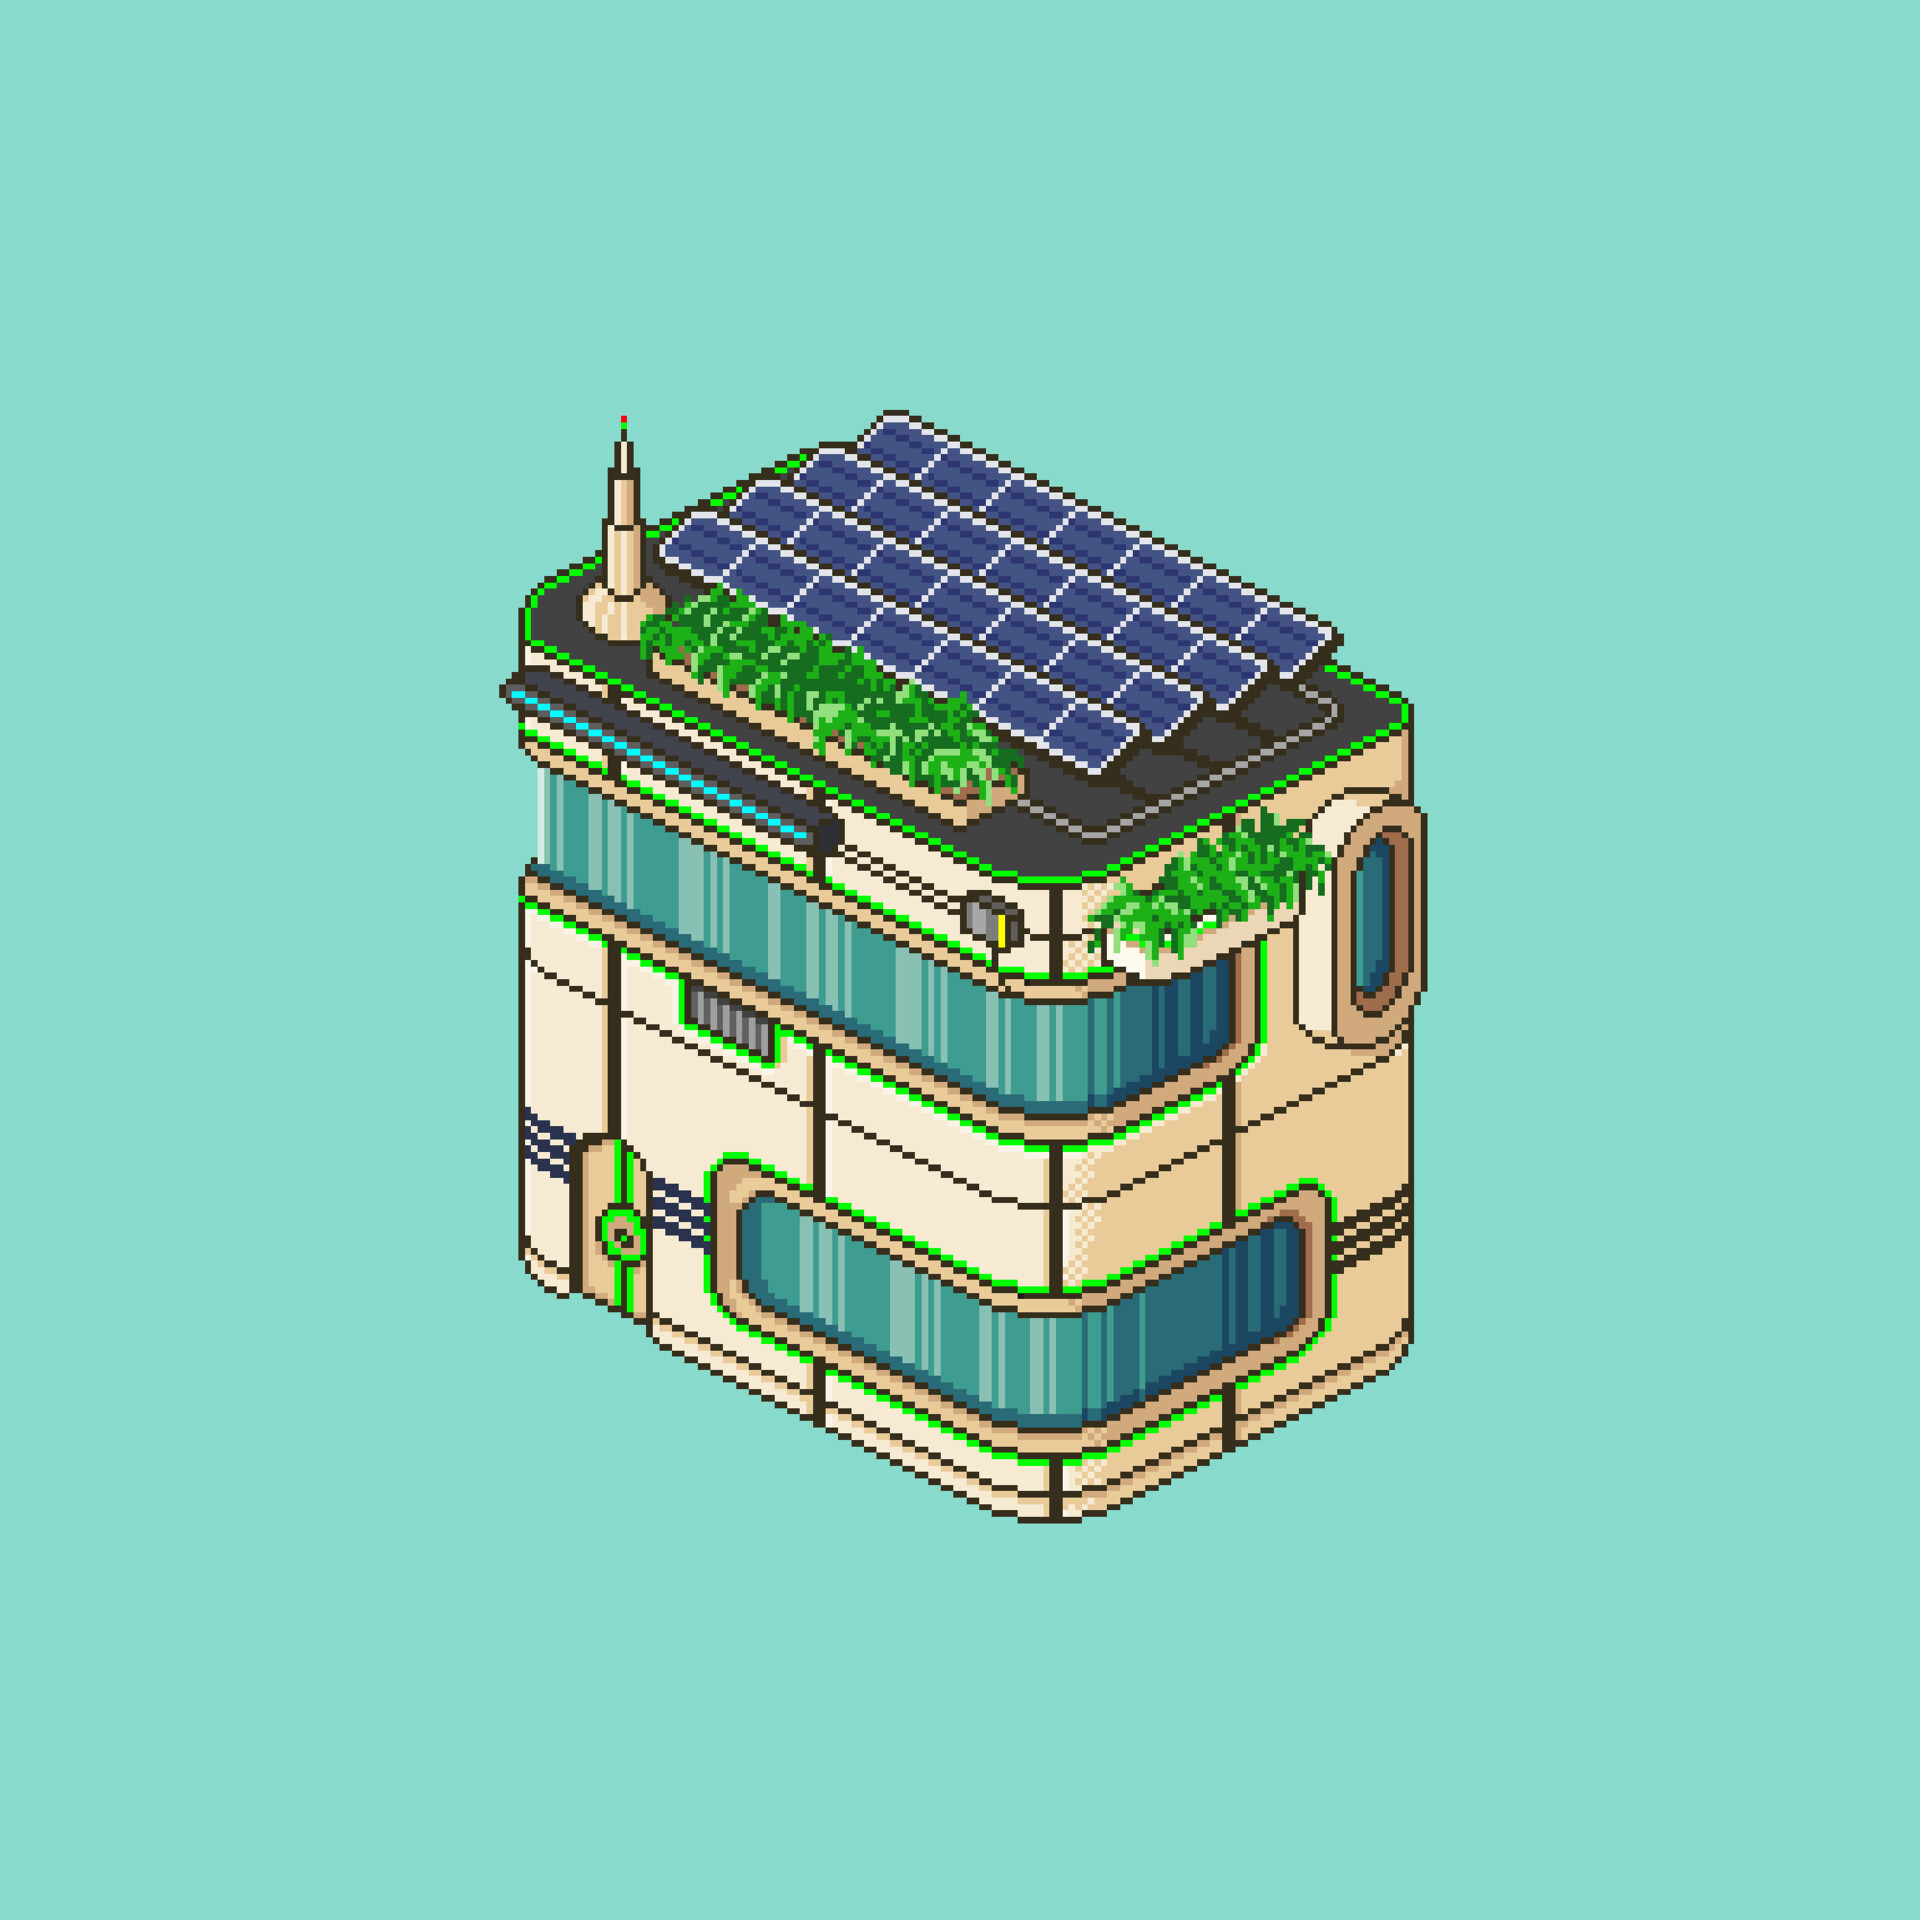 Solarpunk buildings